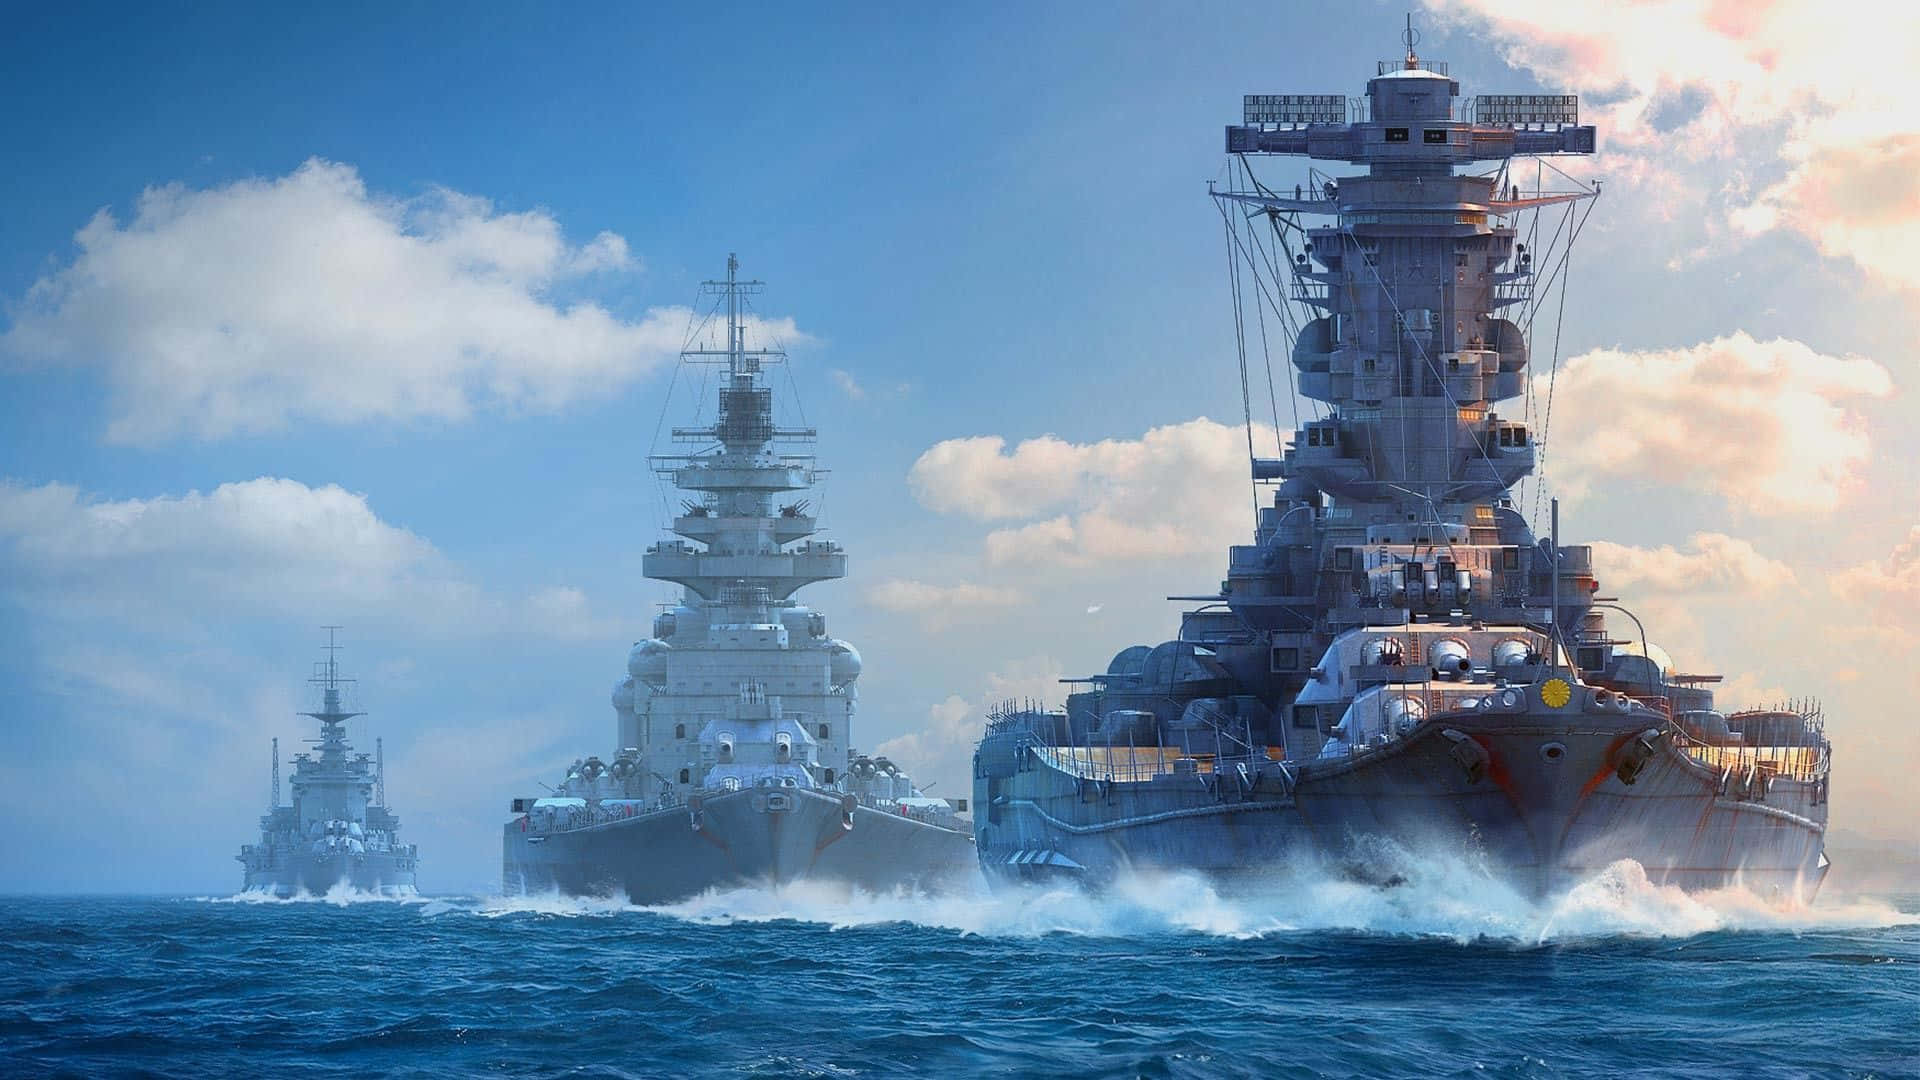 The epic USS Missouri on the open seas